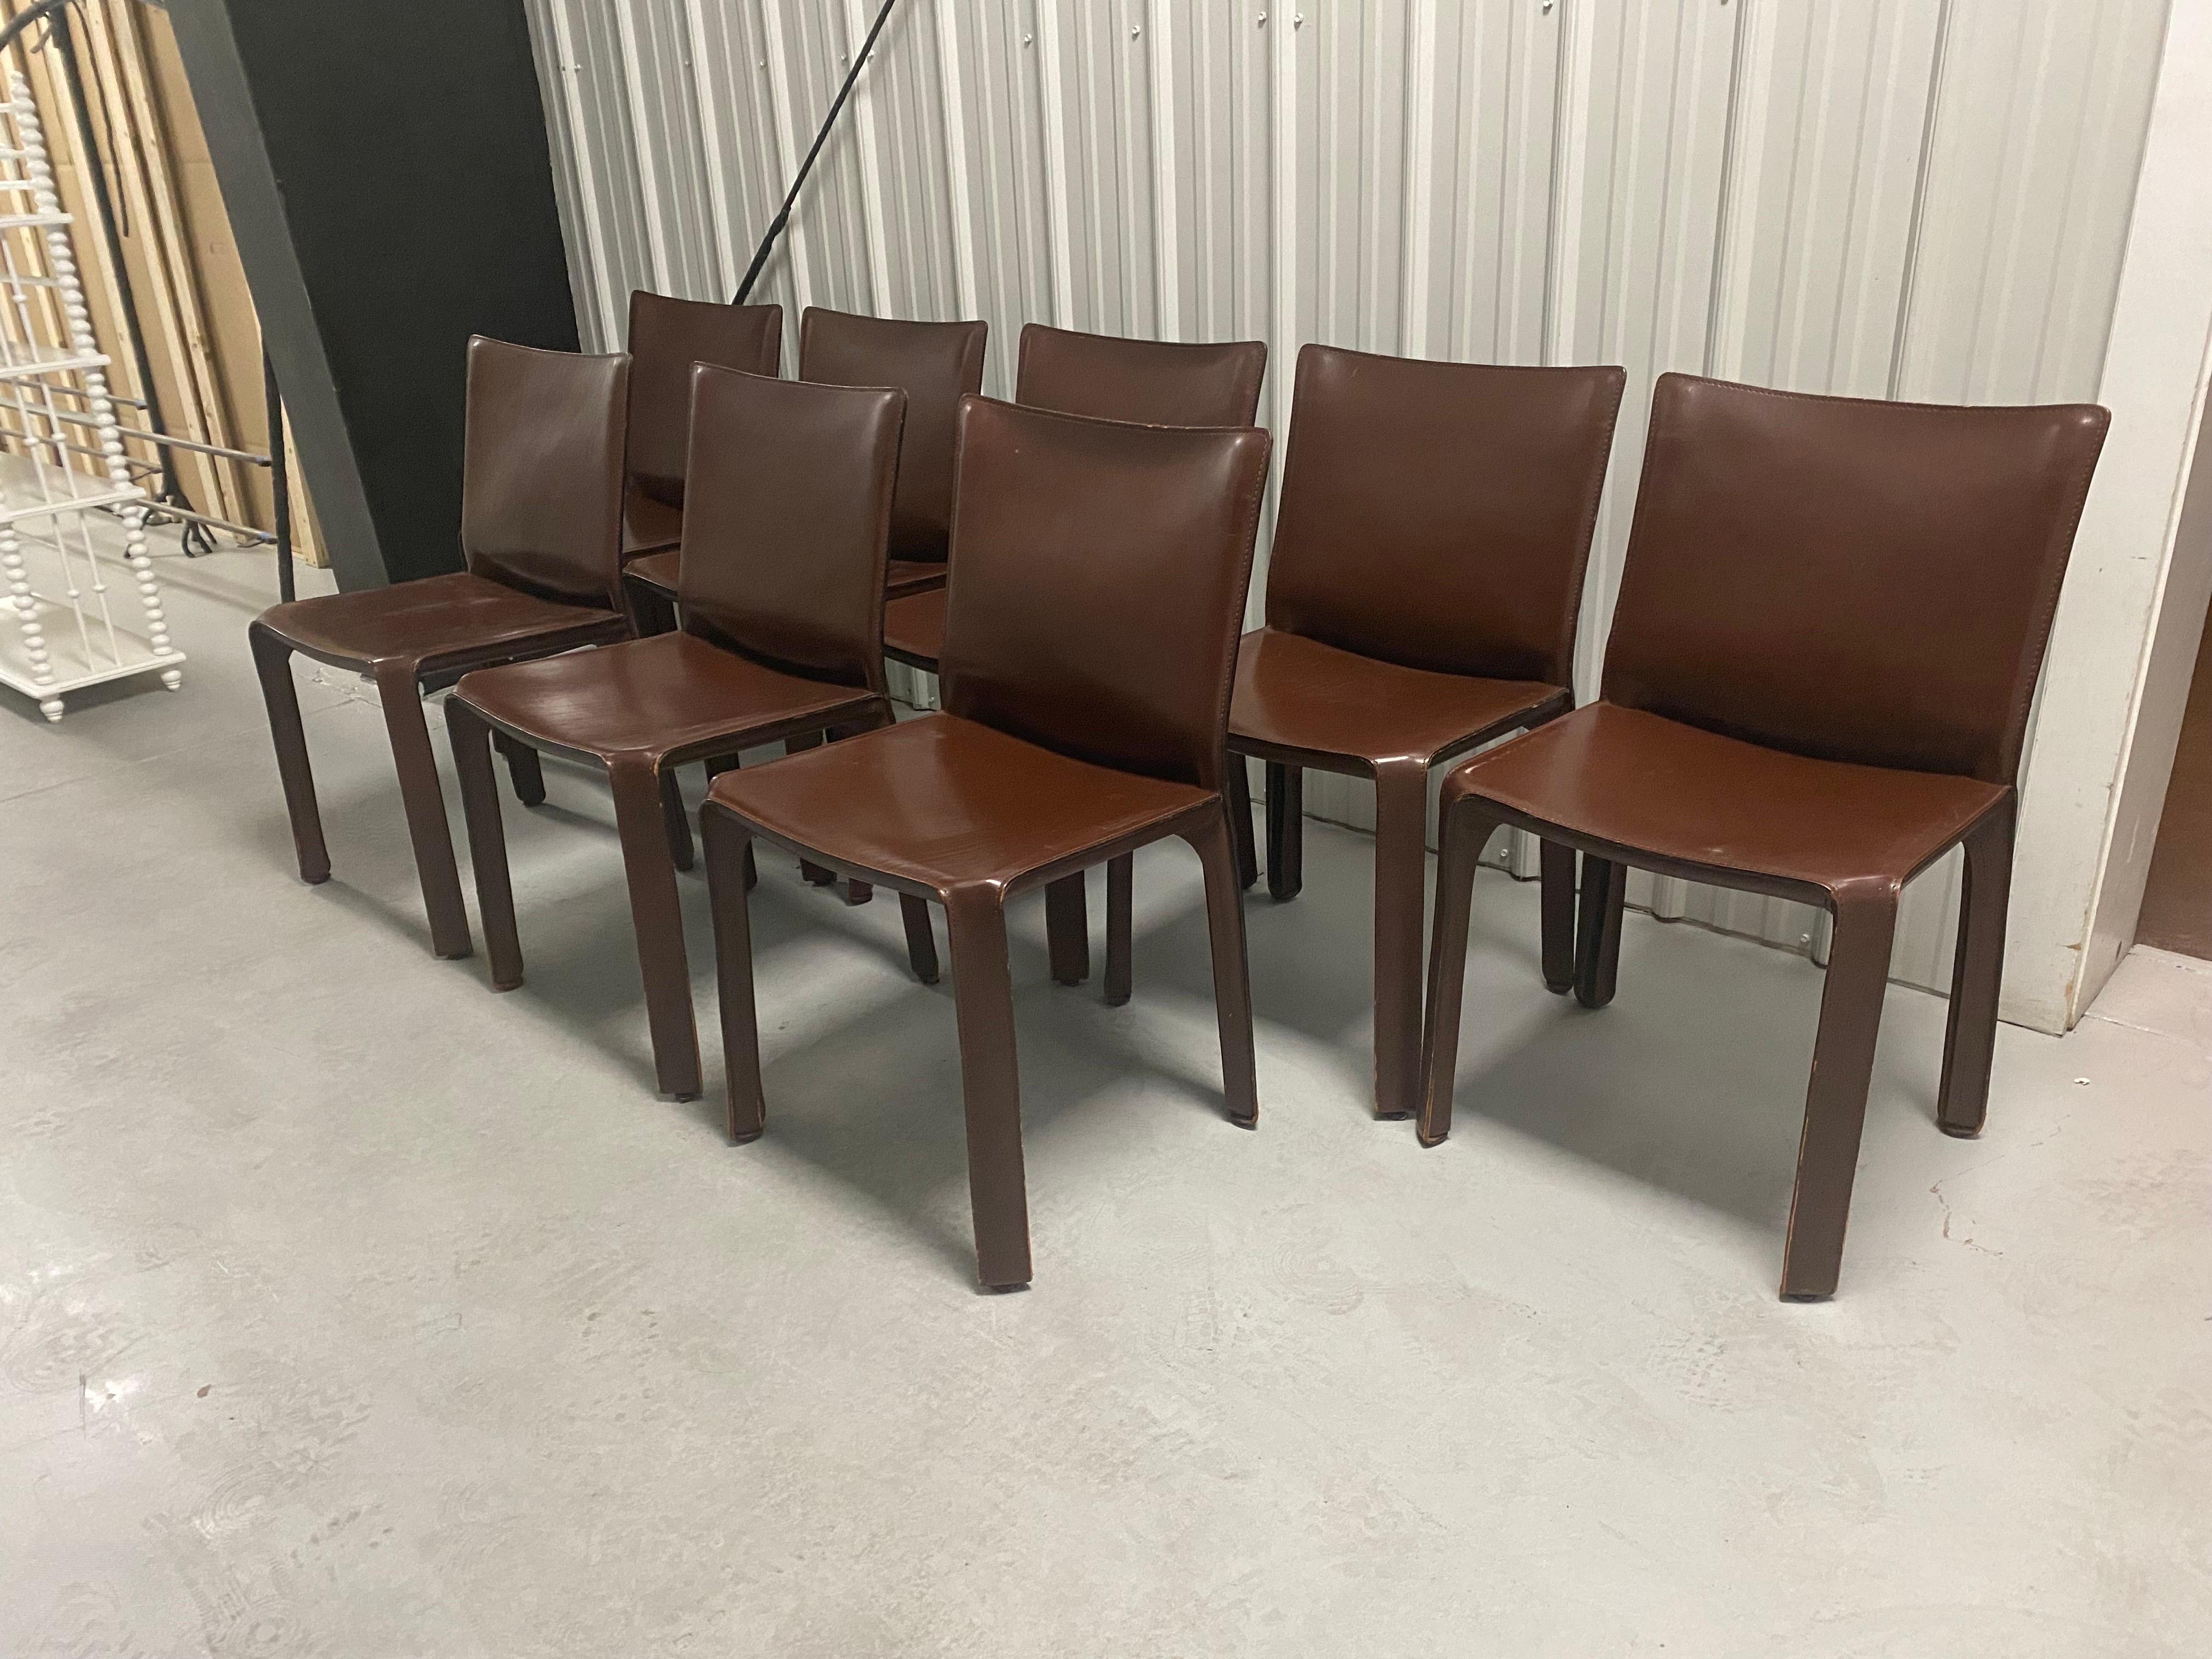 Schöner Satz von acht Cab Chairs aus Leder, entworfen von Mario Bellini im Jahr 1976.
Hergestellt von Cassina in den 1990er Jahren. Das Set besteht aus acht Cab 412 Esszimmerstühlen, die mit dunkelbraunem mahagonifarbenem Leder bezogen sind. 